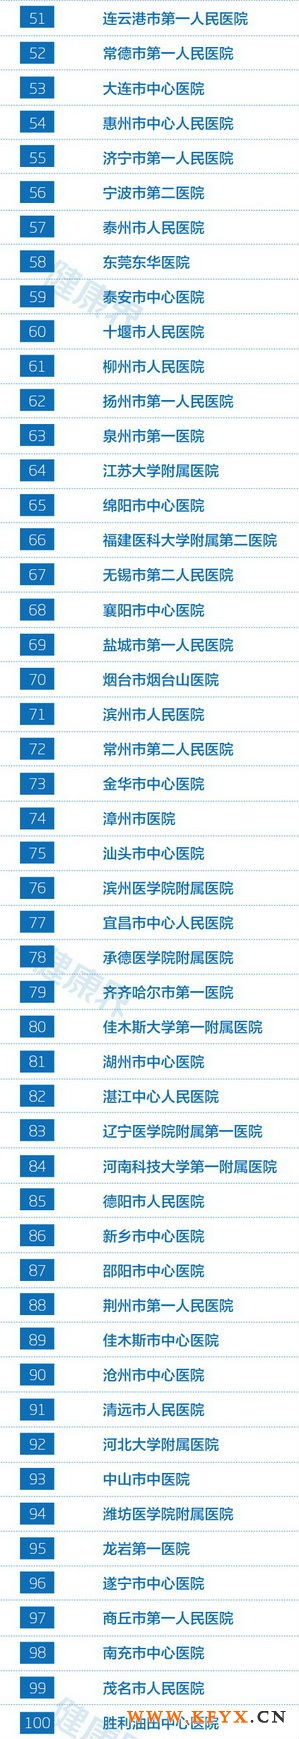 2013中国地级市医院竞争力百强排行榜(2)